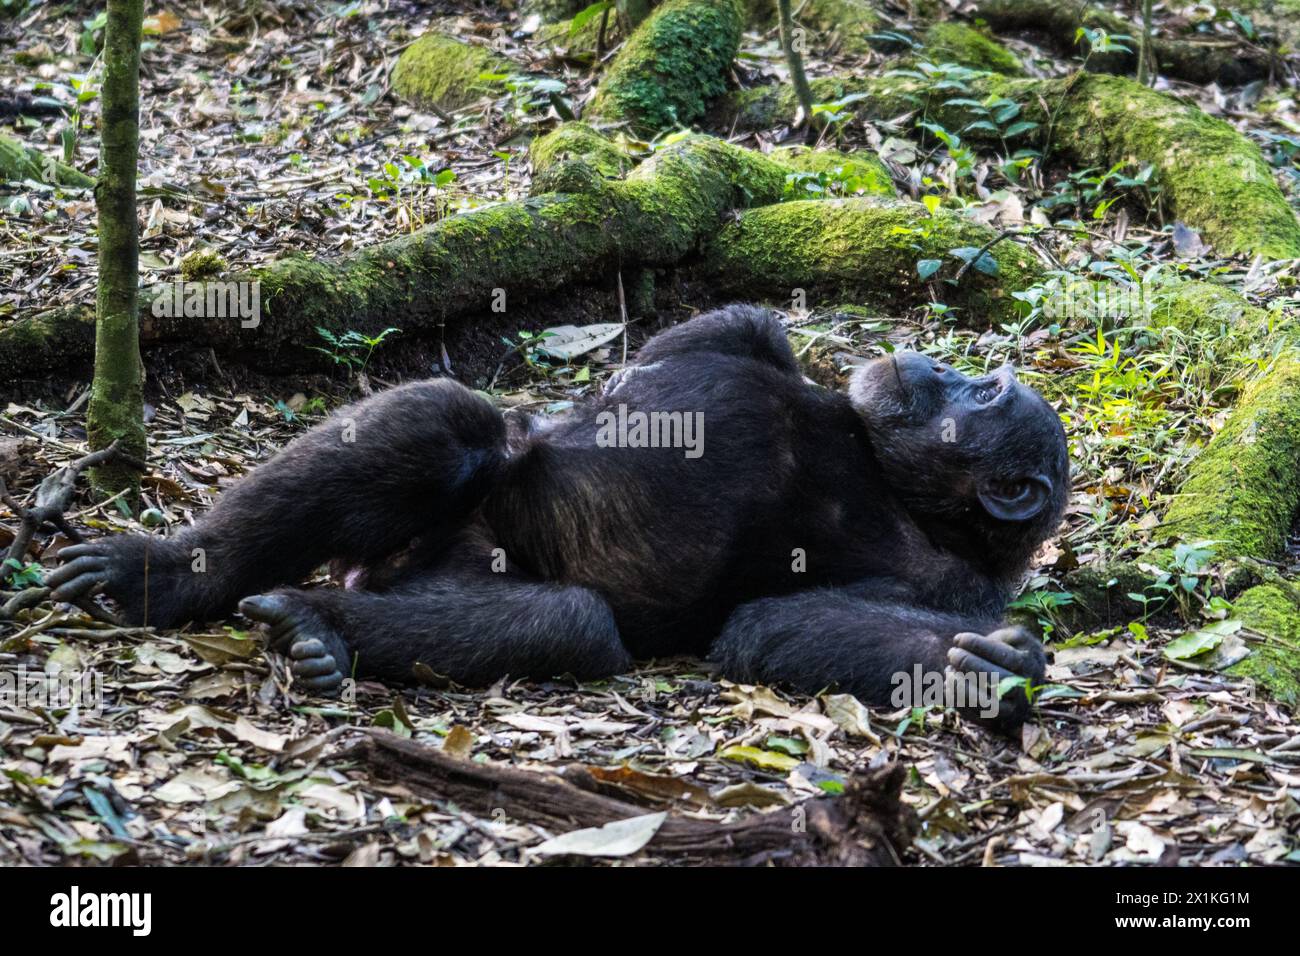 Chimpanzee in the Kibale National Park, Uganda Stock Photo